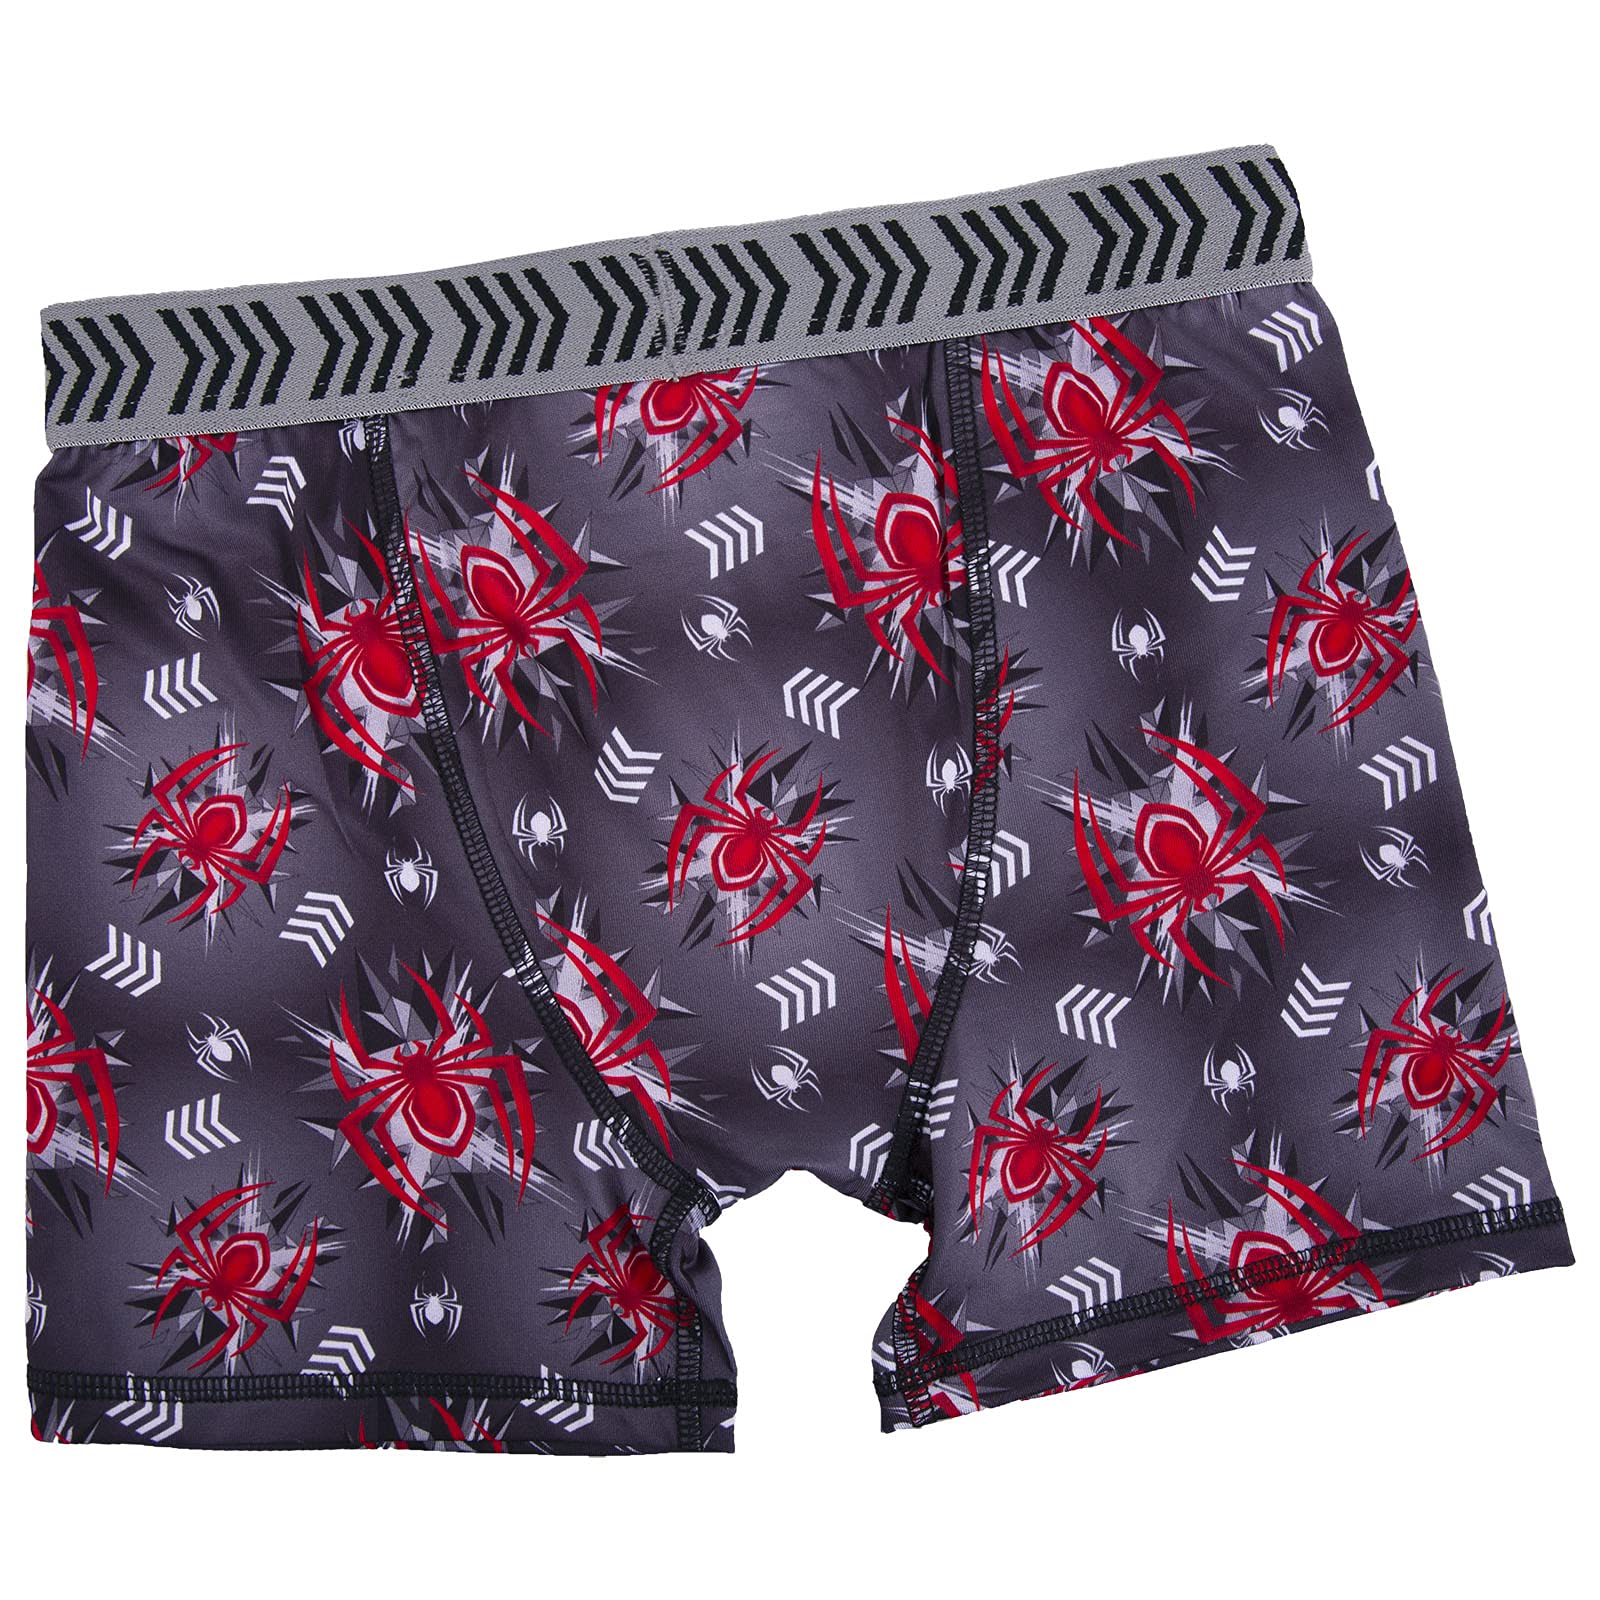 Spiderman boys Underwear Multipacks Boxer Briefs, Milesmorales7pkathletic, 12 US